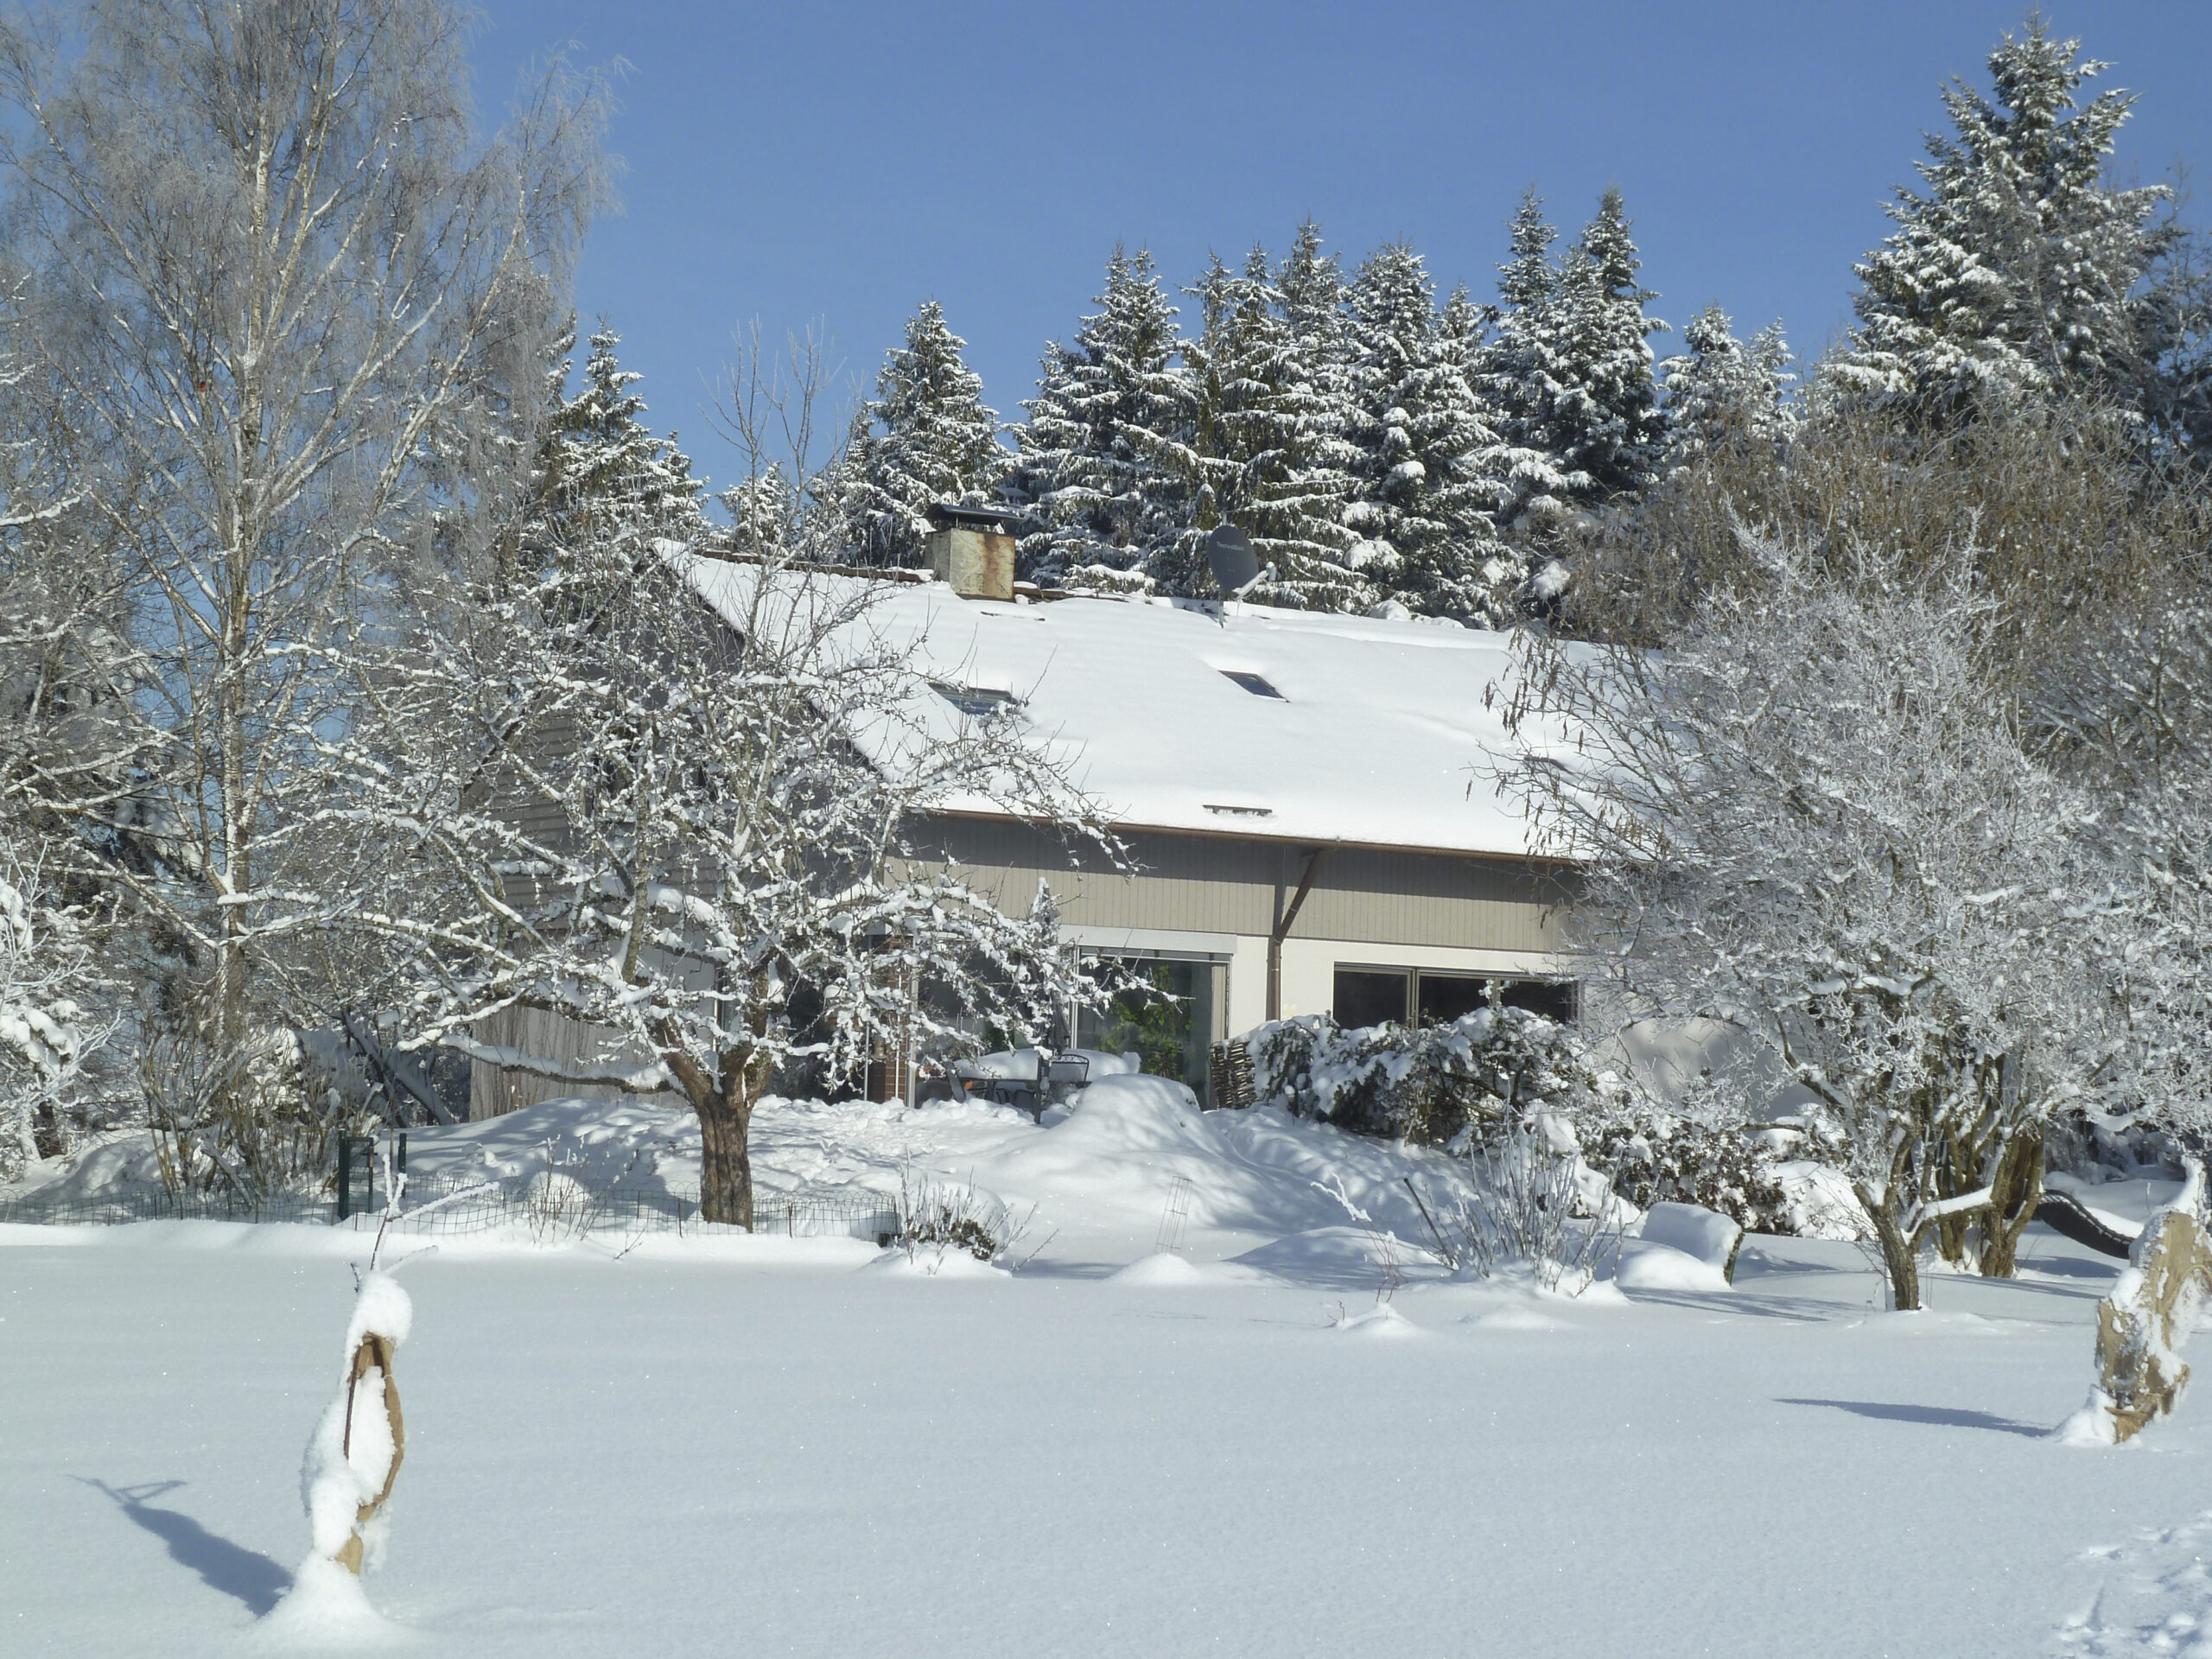 Schneebedecktes Waldhaus Umgeben von zugeschneiten Bäumen und einer Schneefläche davor